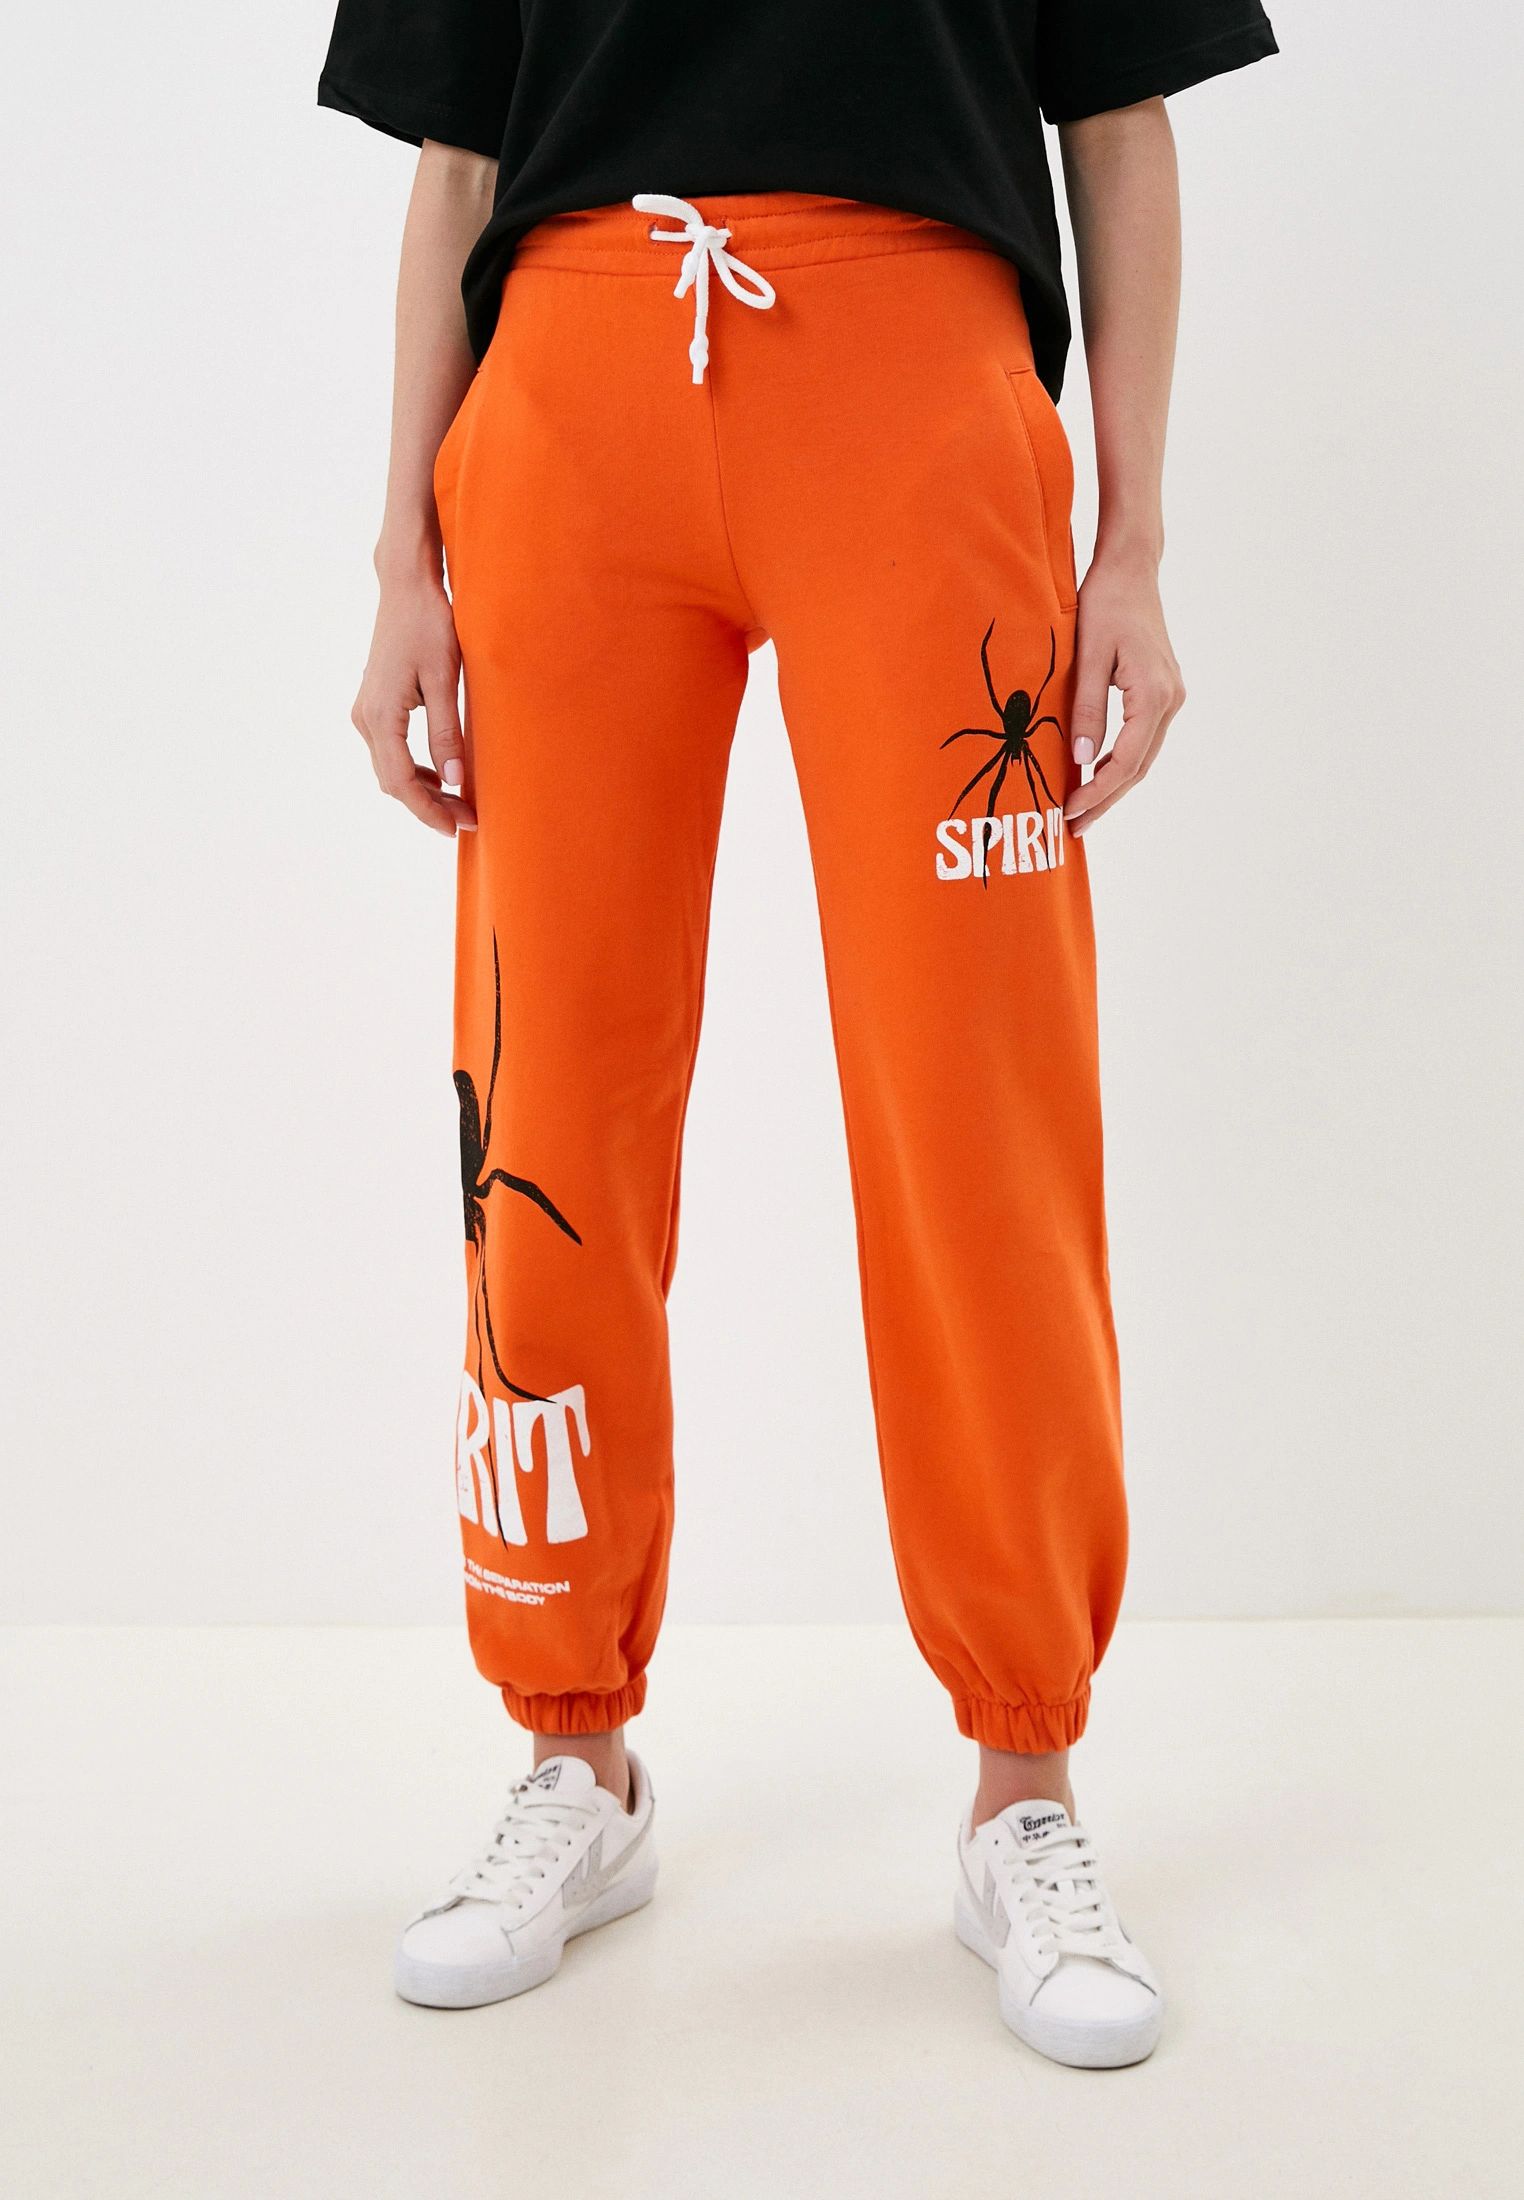 Спортивные брюки женские BLACKSI 5039 оранжевые M